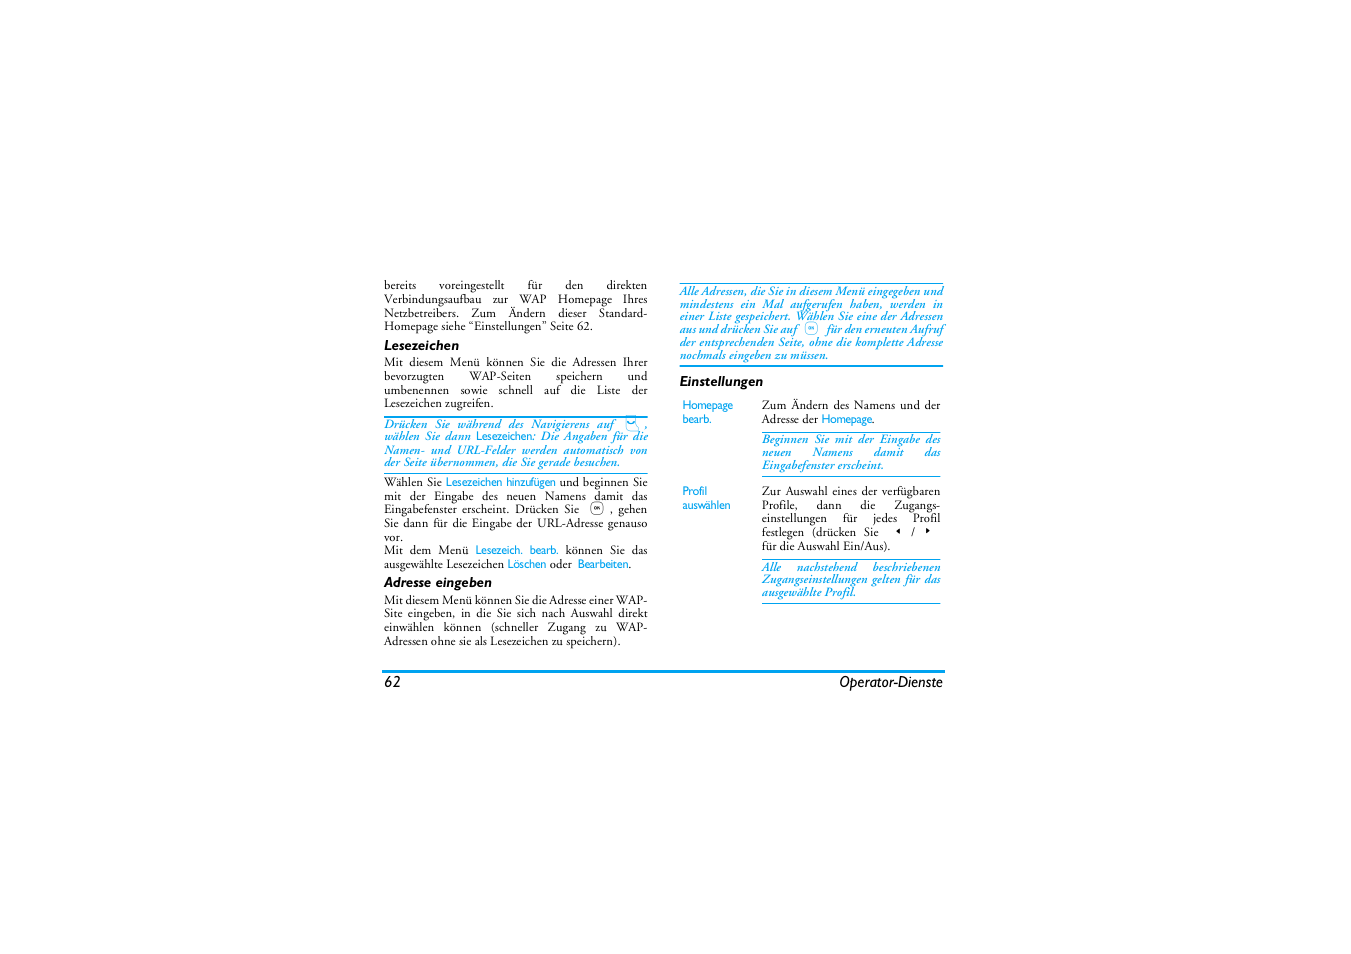 Lesezeichen, Adresse eingeben, Einstellungen | Philips Mobiltelefon Benutzerhandbuch | Seite 70 / 92